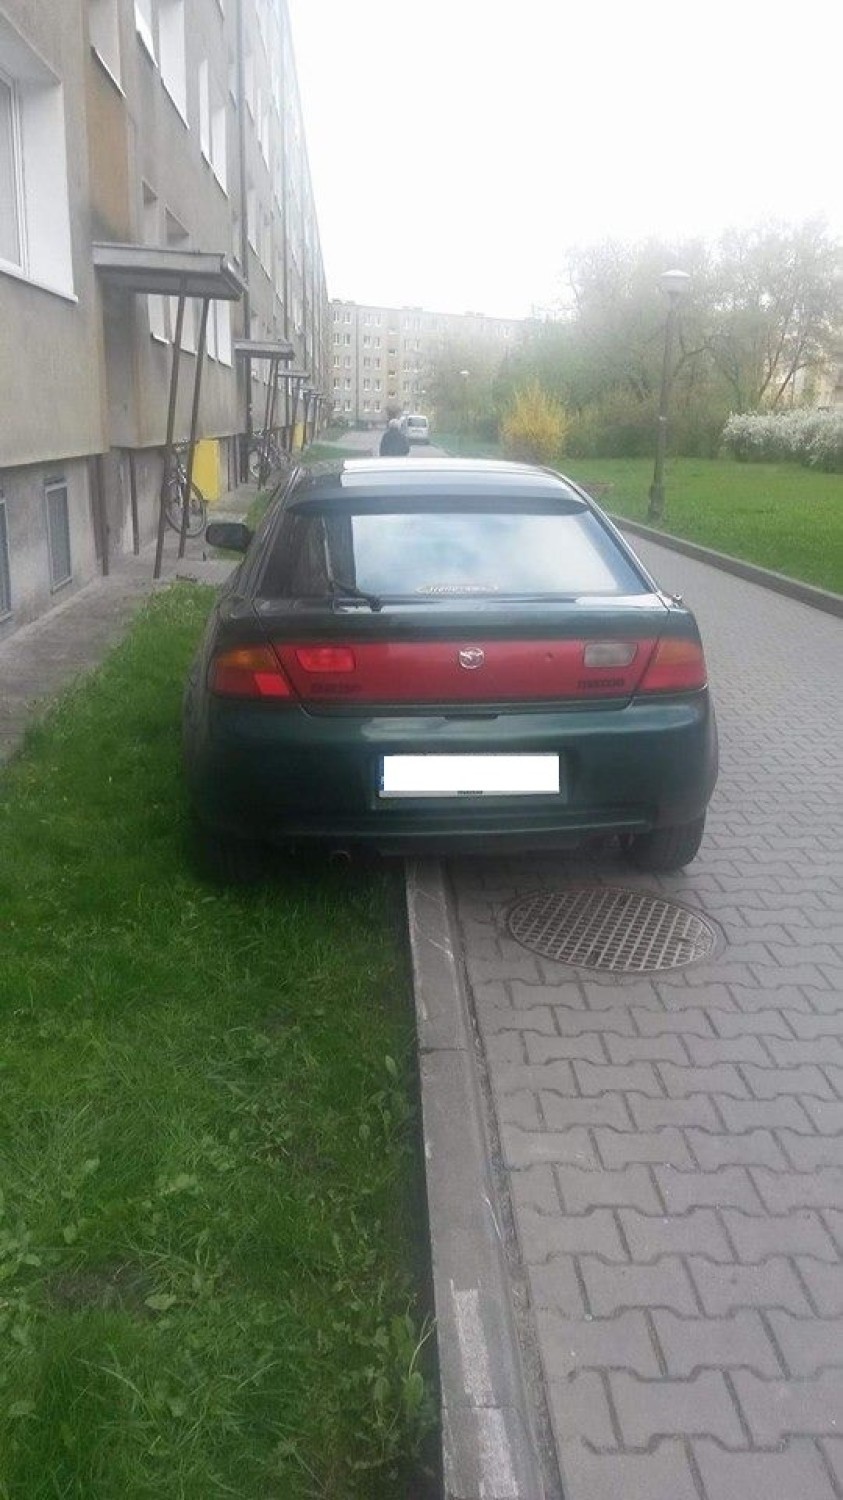 Zobaczcie, jak się parkuje w stolicy Wielkopolski!